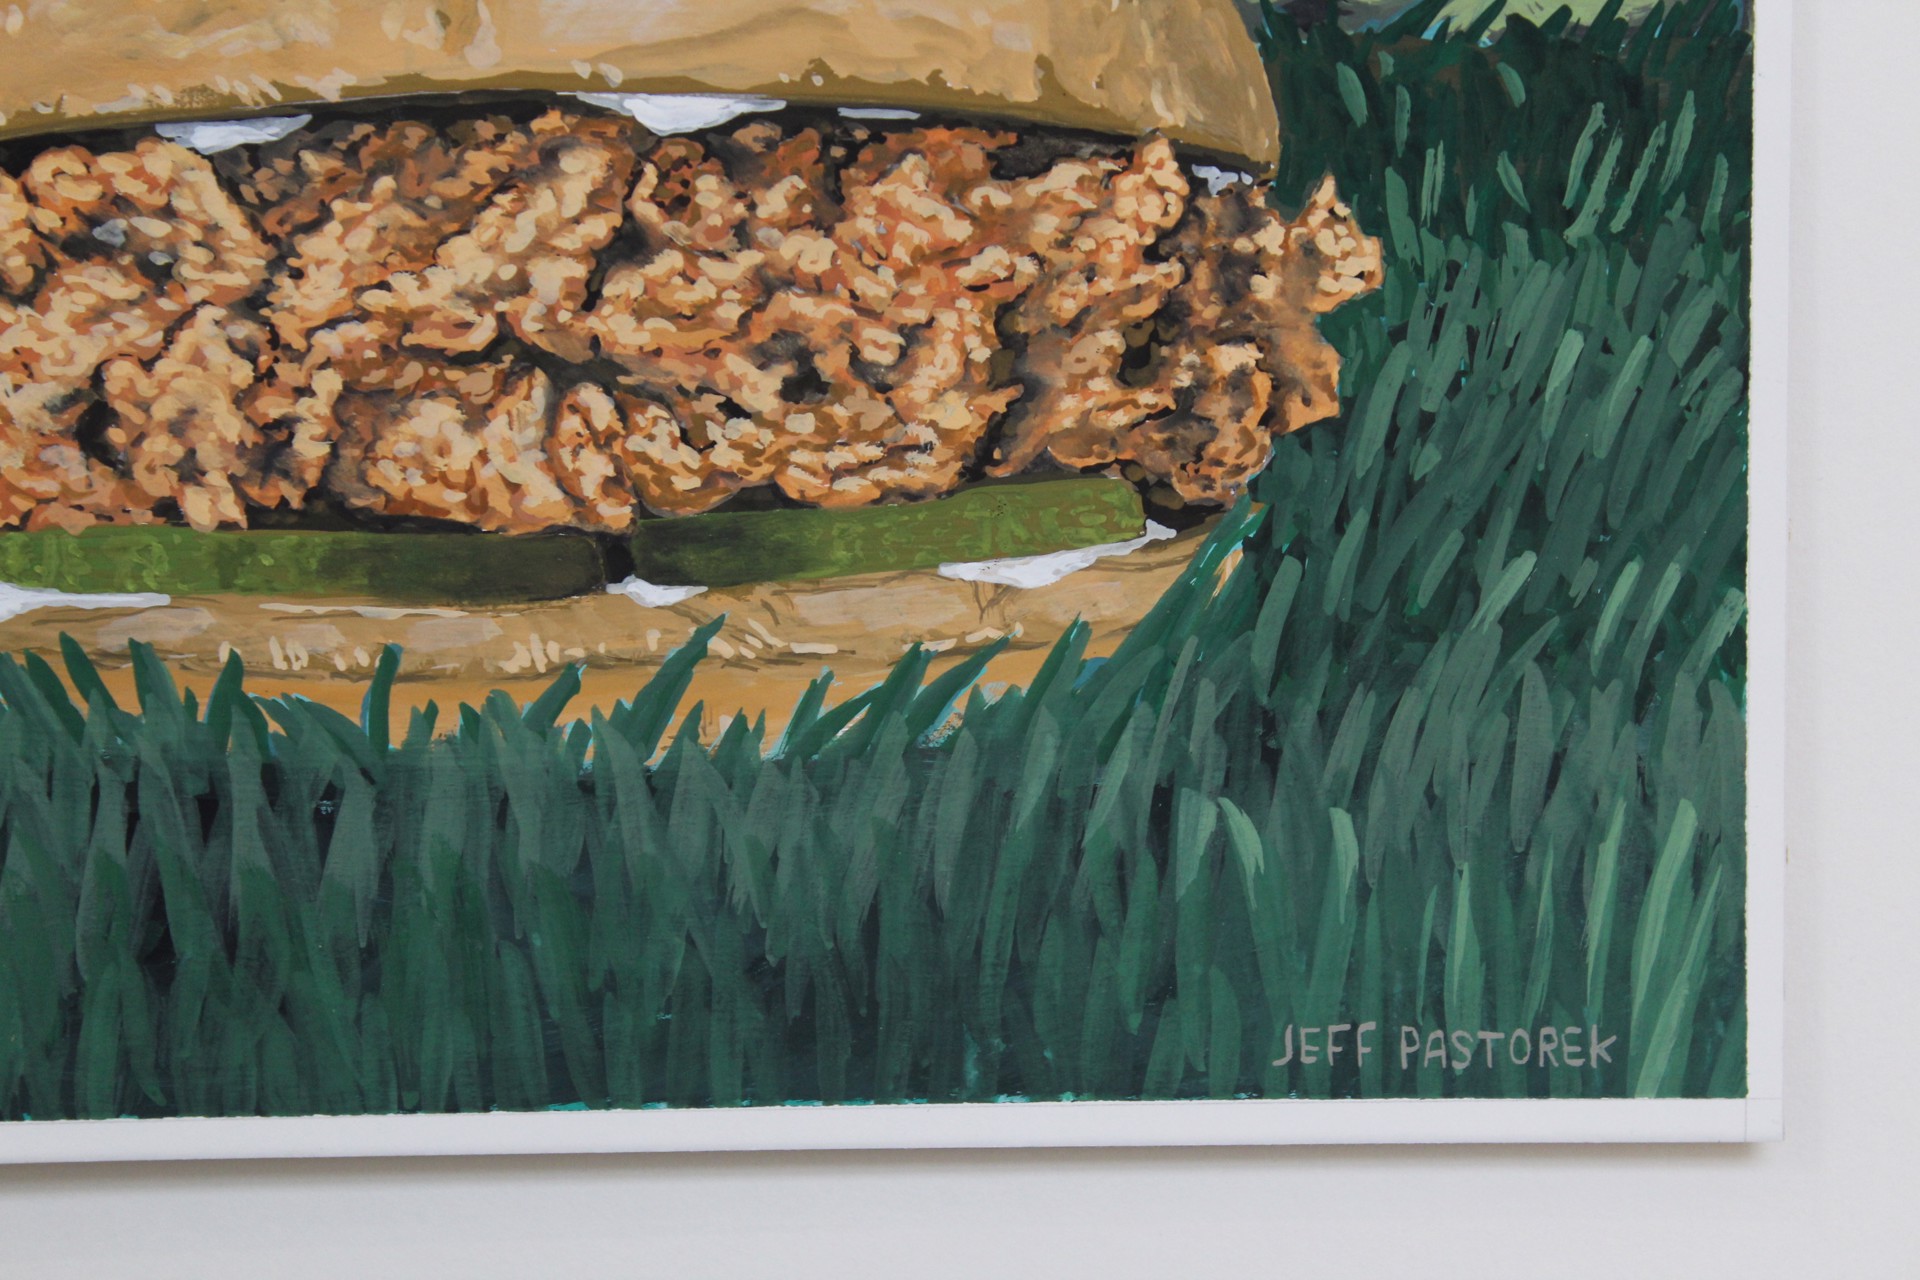 Blue Jay on Popeyes Chicken Sandwich by Jeff Pastorek